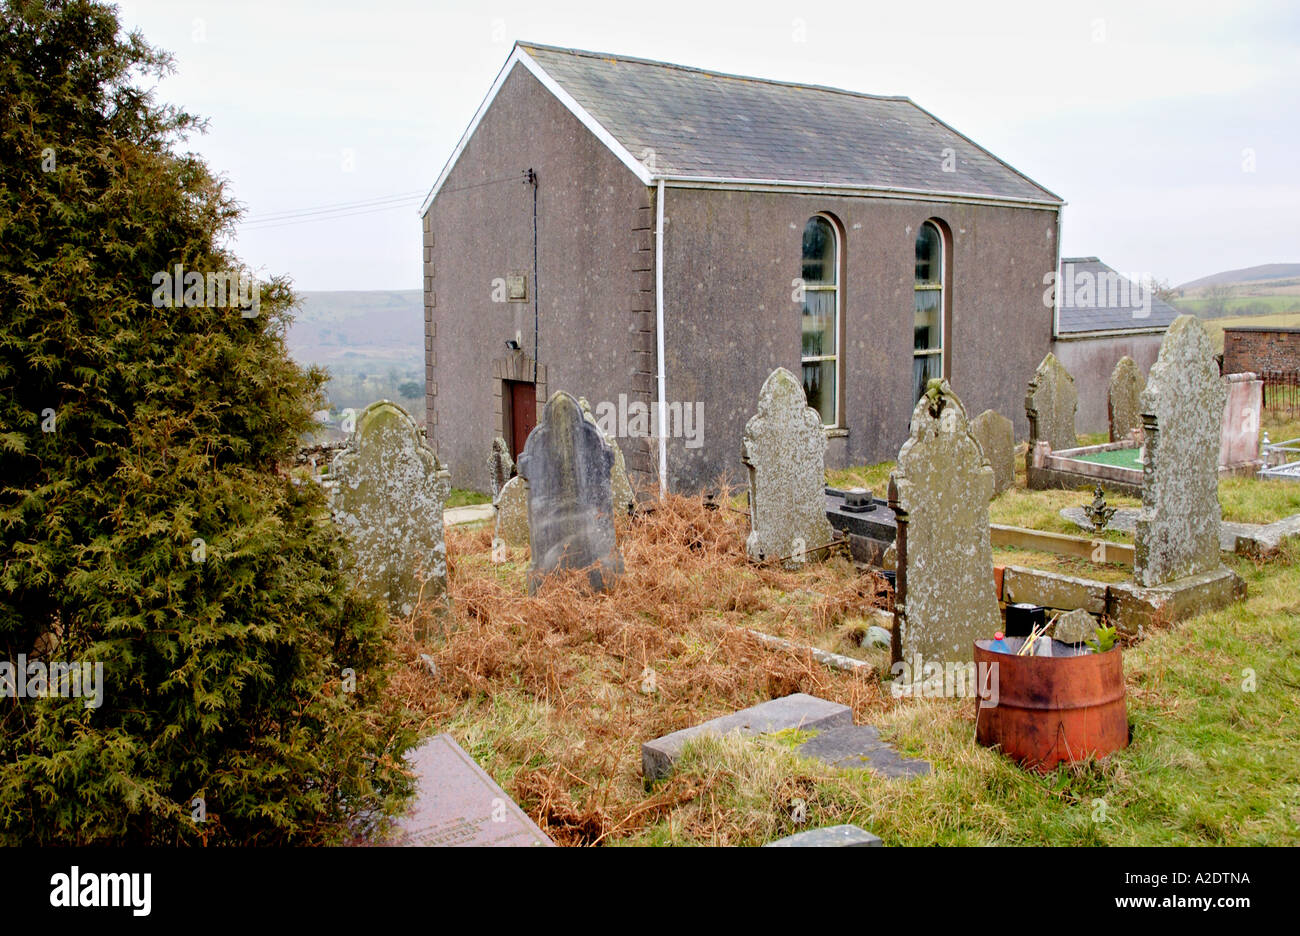 Gerazim cappella datata 1811 sul telecomando aprire la brughiera presso il villaggio di Cwmcerdinen vicino a Swansea South Wales UK Foto Stock